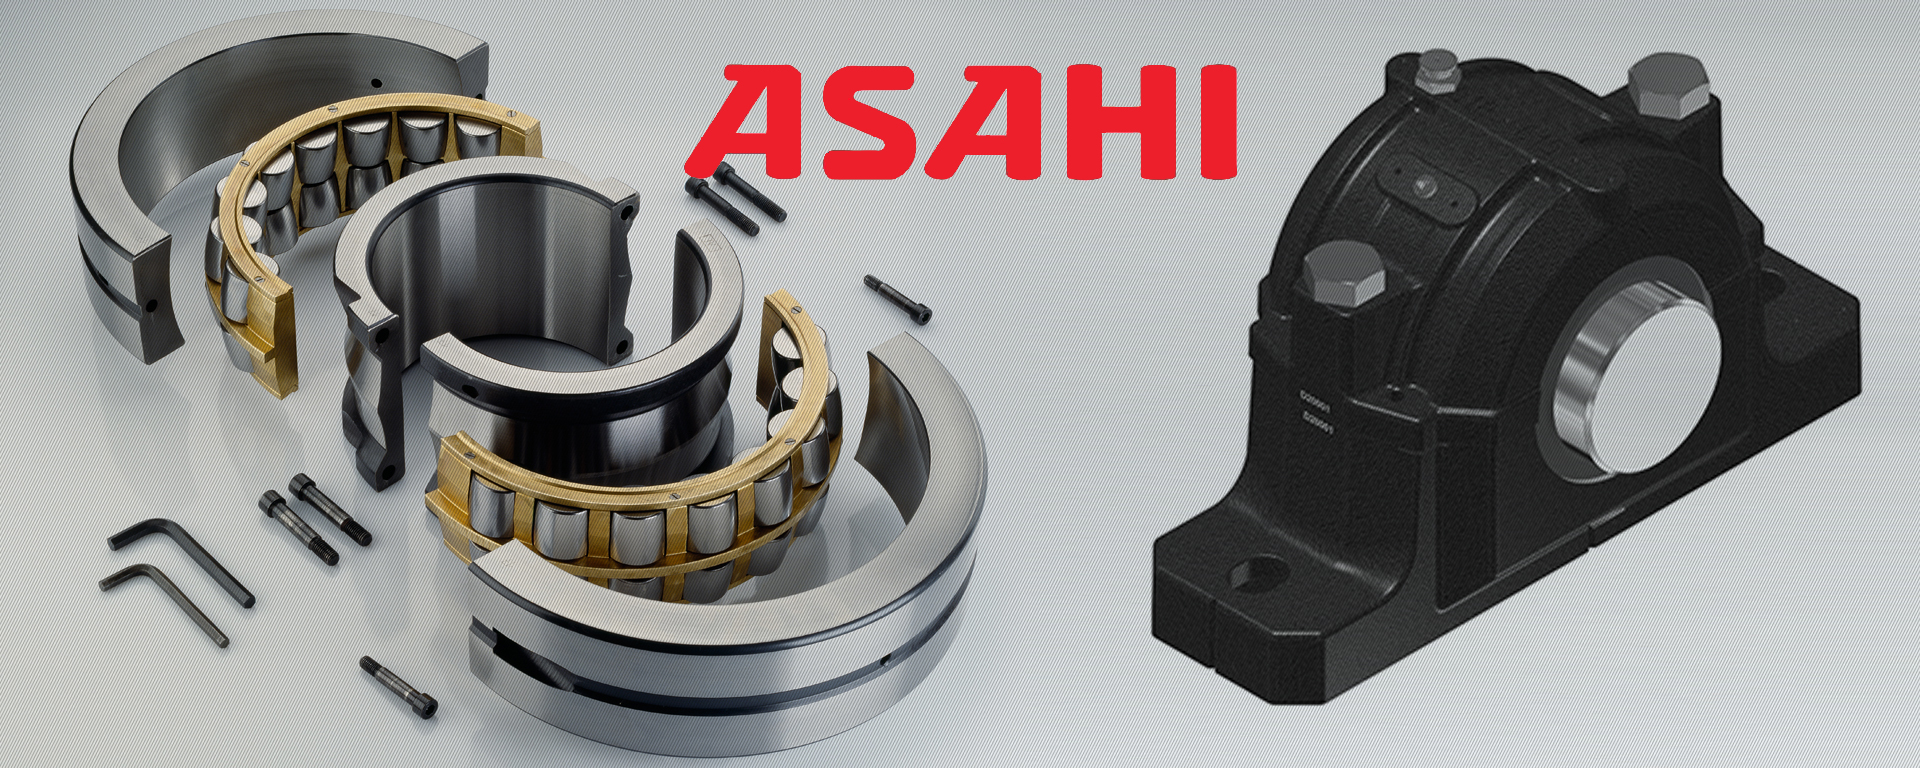 ASAHI轴承 - 上海奥煌轴承有限公司